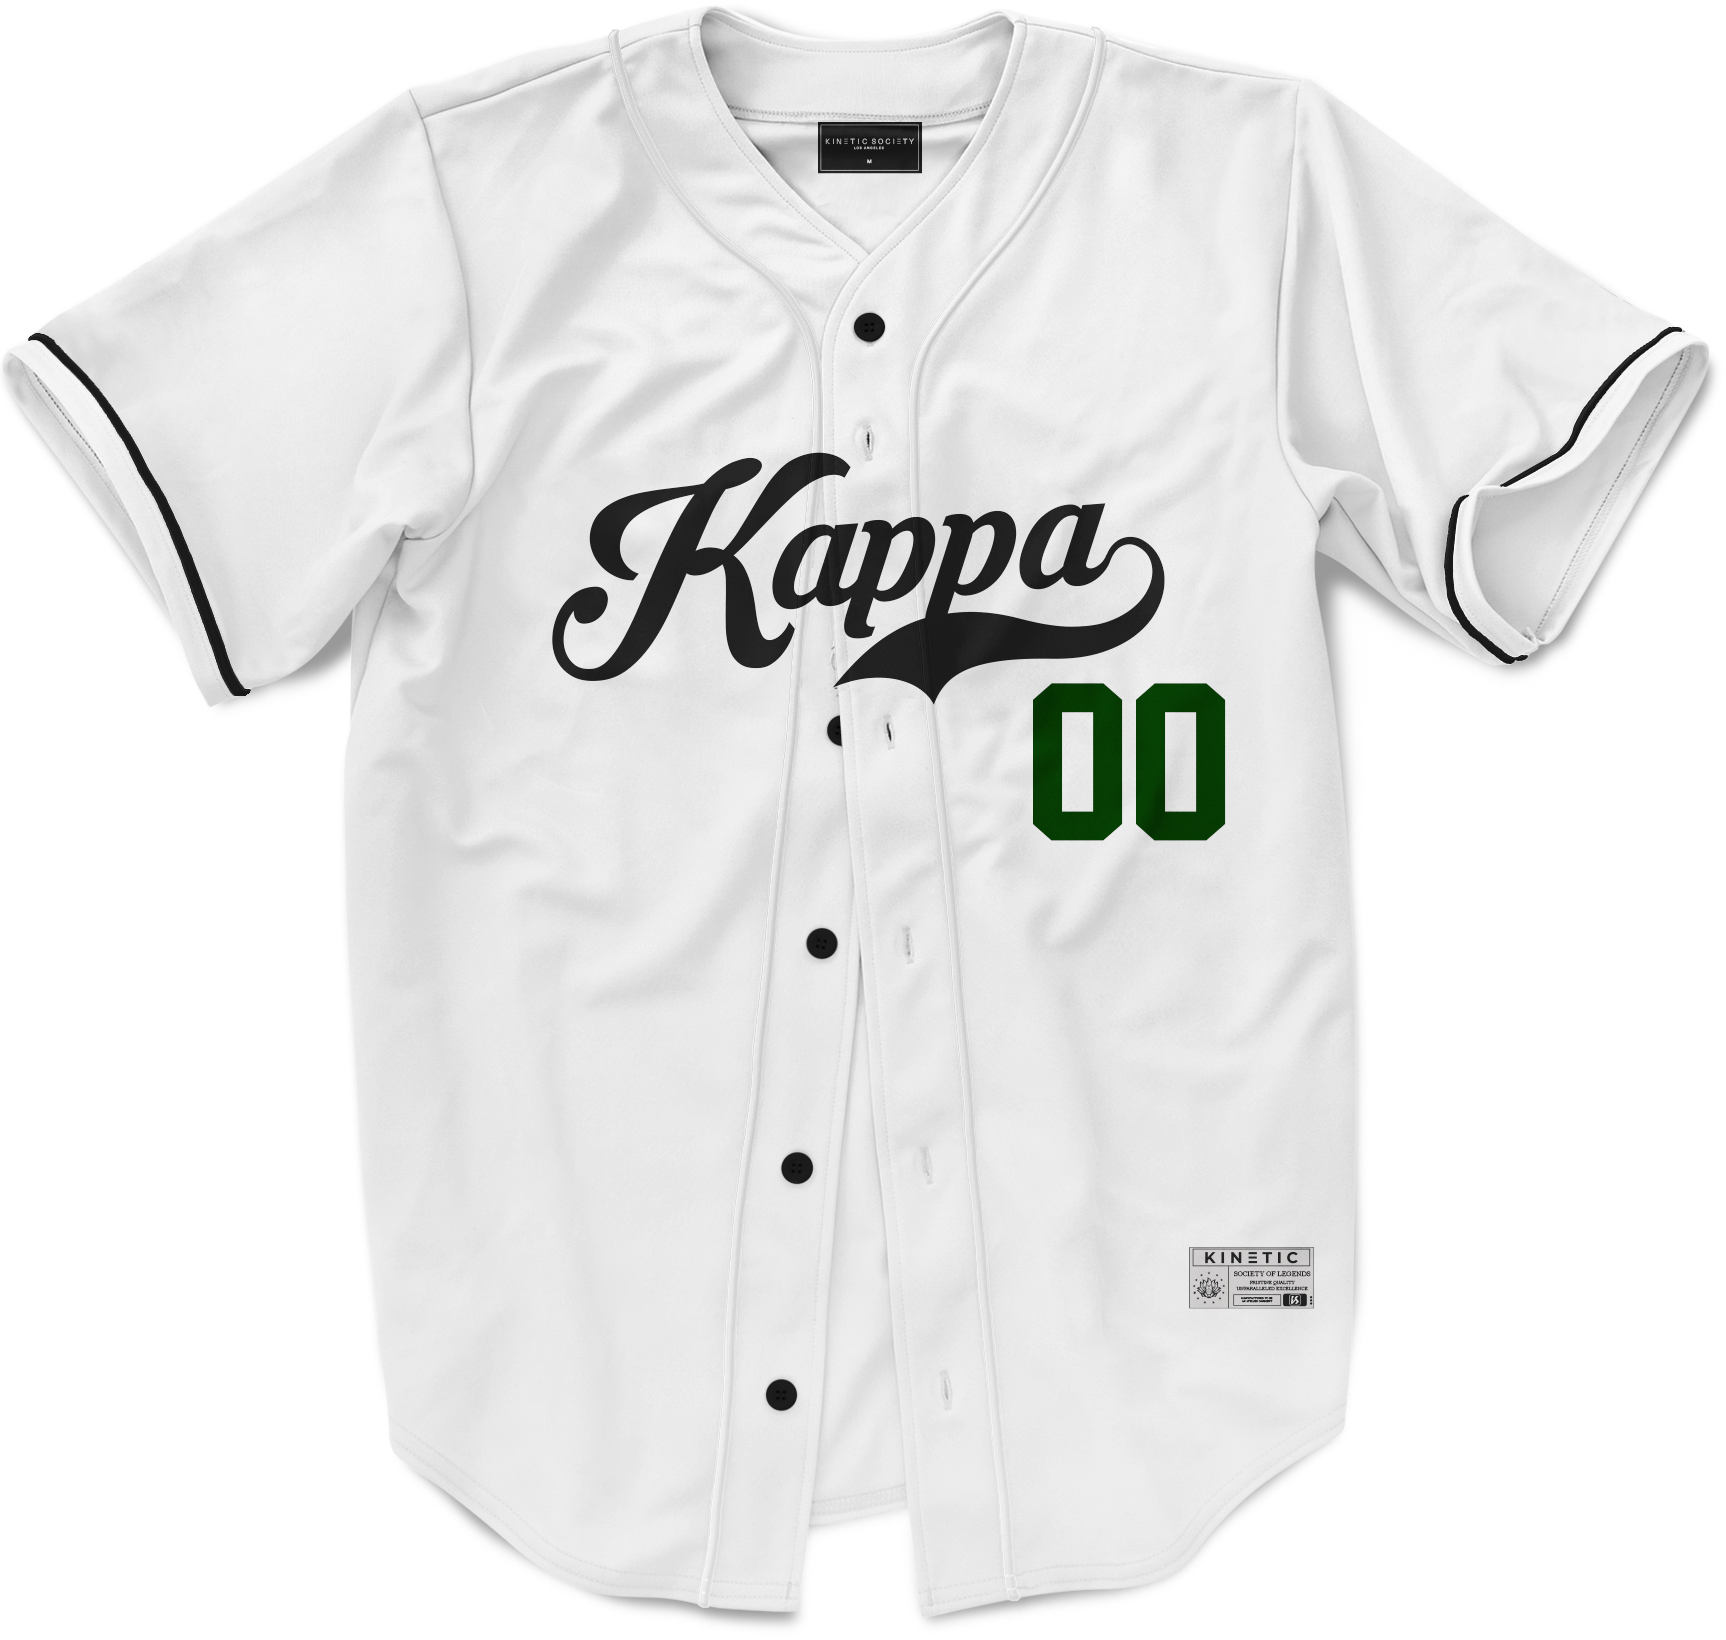 Kappa Kappa Gamma - Classic Ballpark Green Baseball Jersey